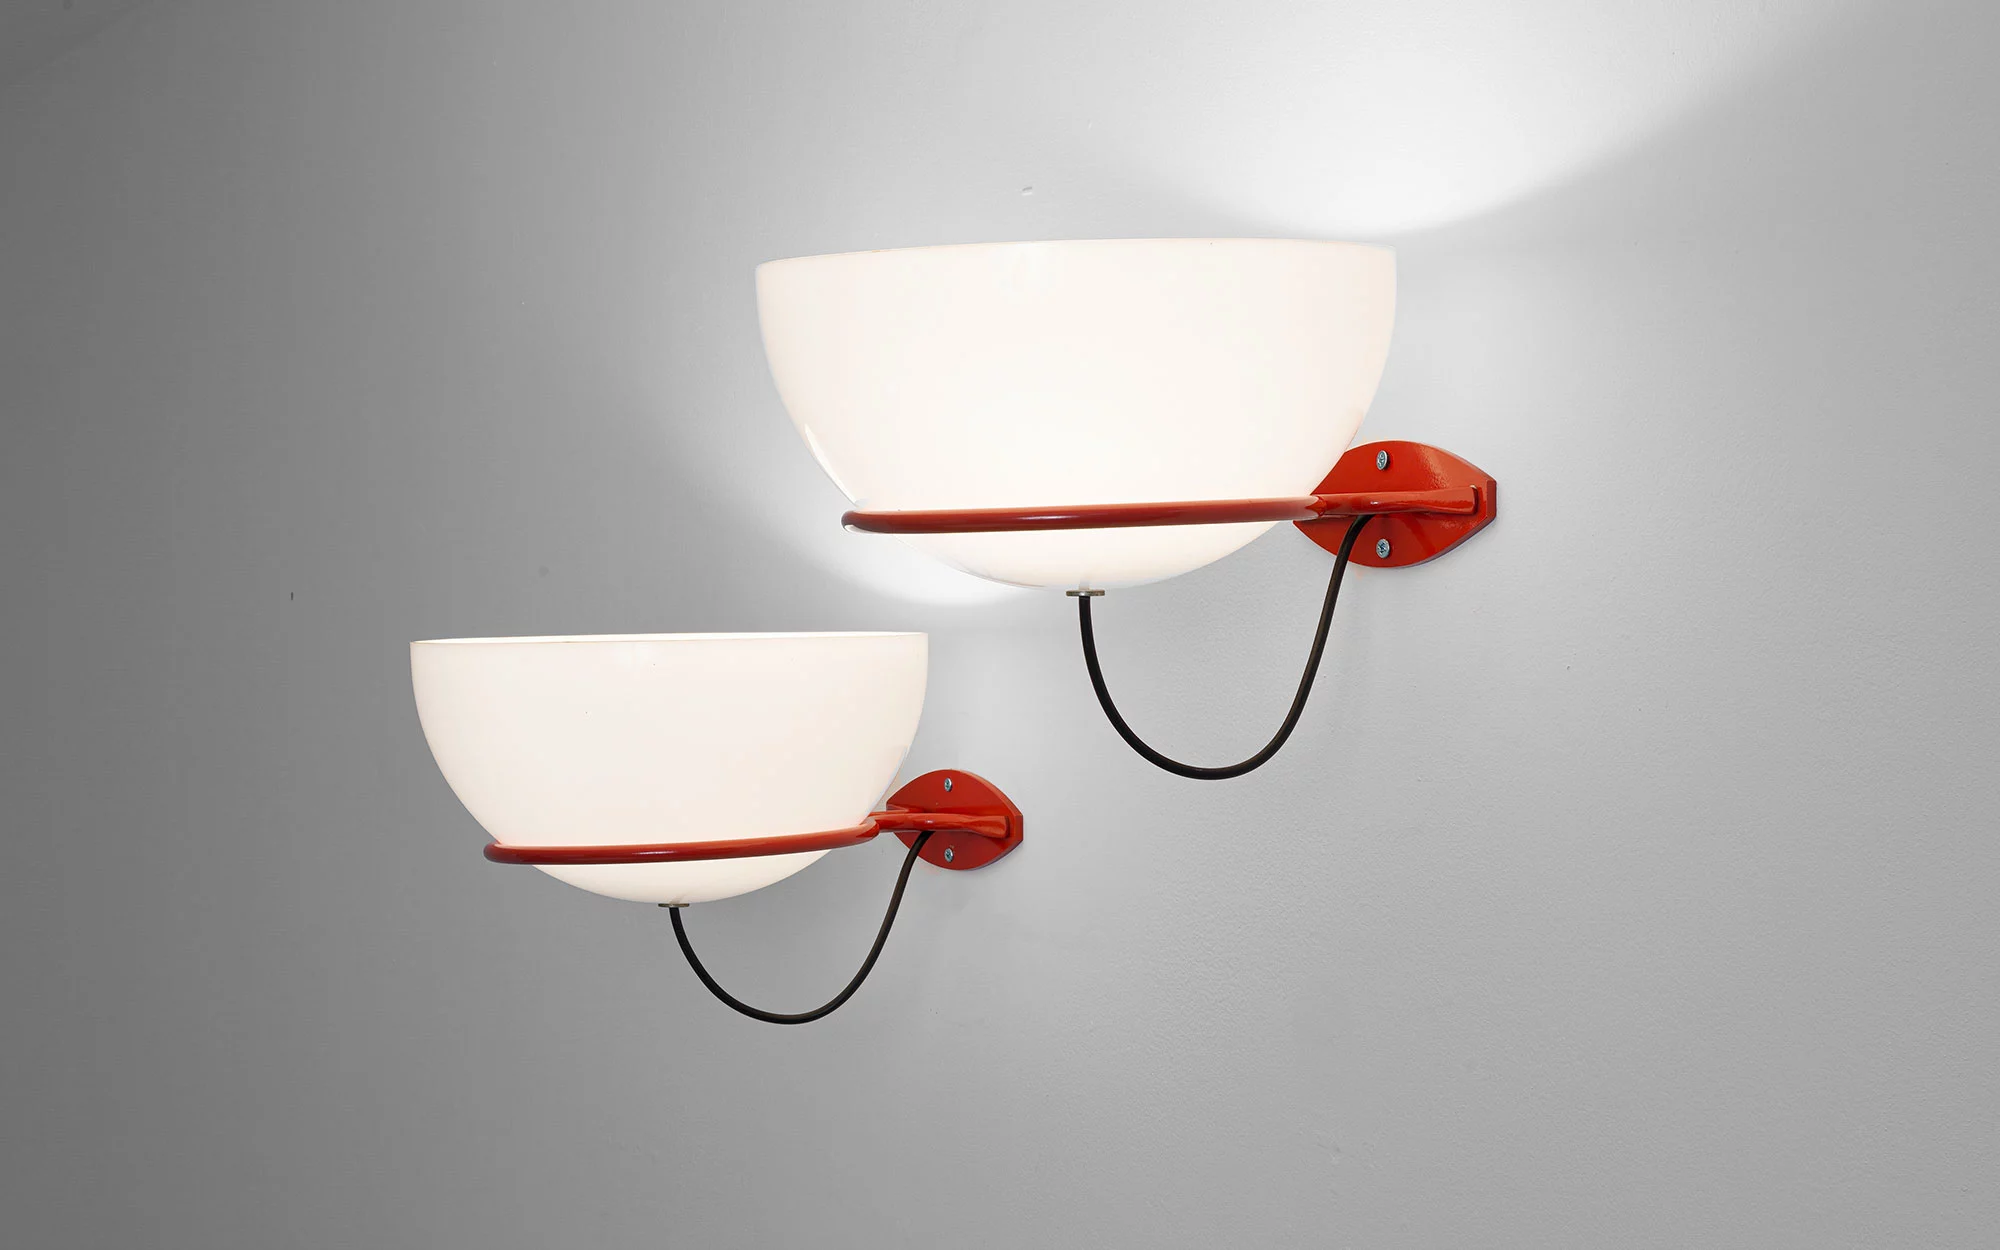 2/2 PX (red) - Gino Sarfatti - Table light - Galerie kreo